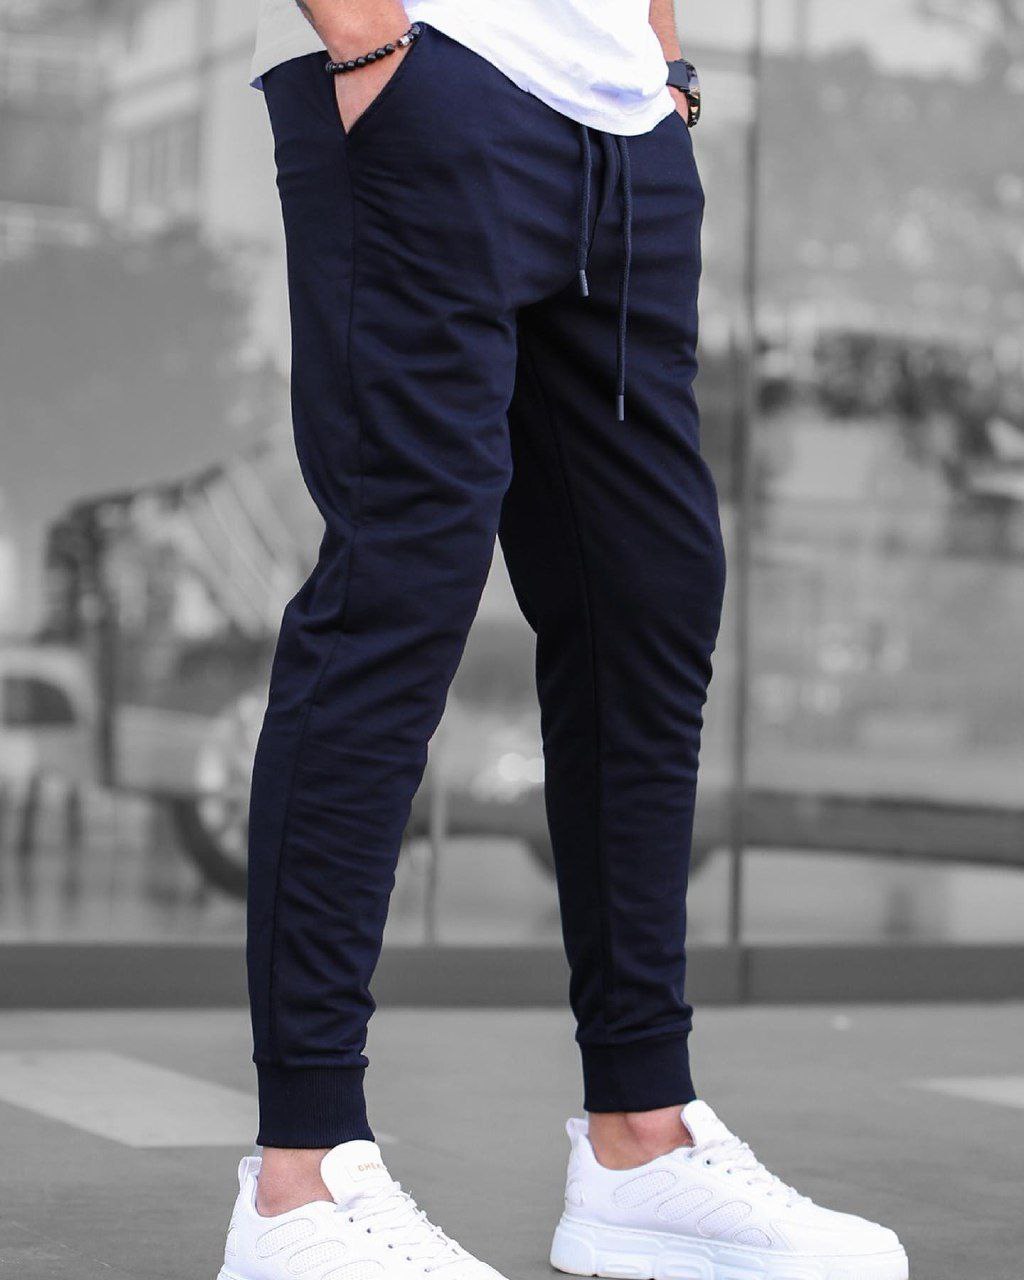 Чоловічі спортивні штани трикотажні Reload Step сині / Легкі стильні завужені літні спортивки - Фото 1